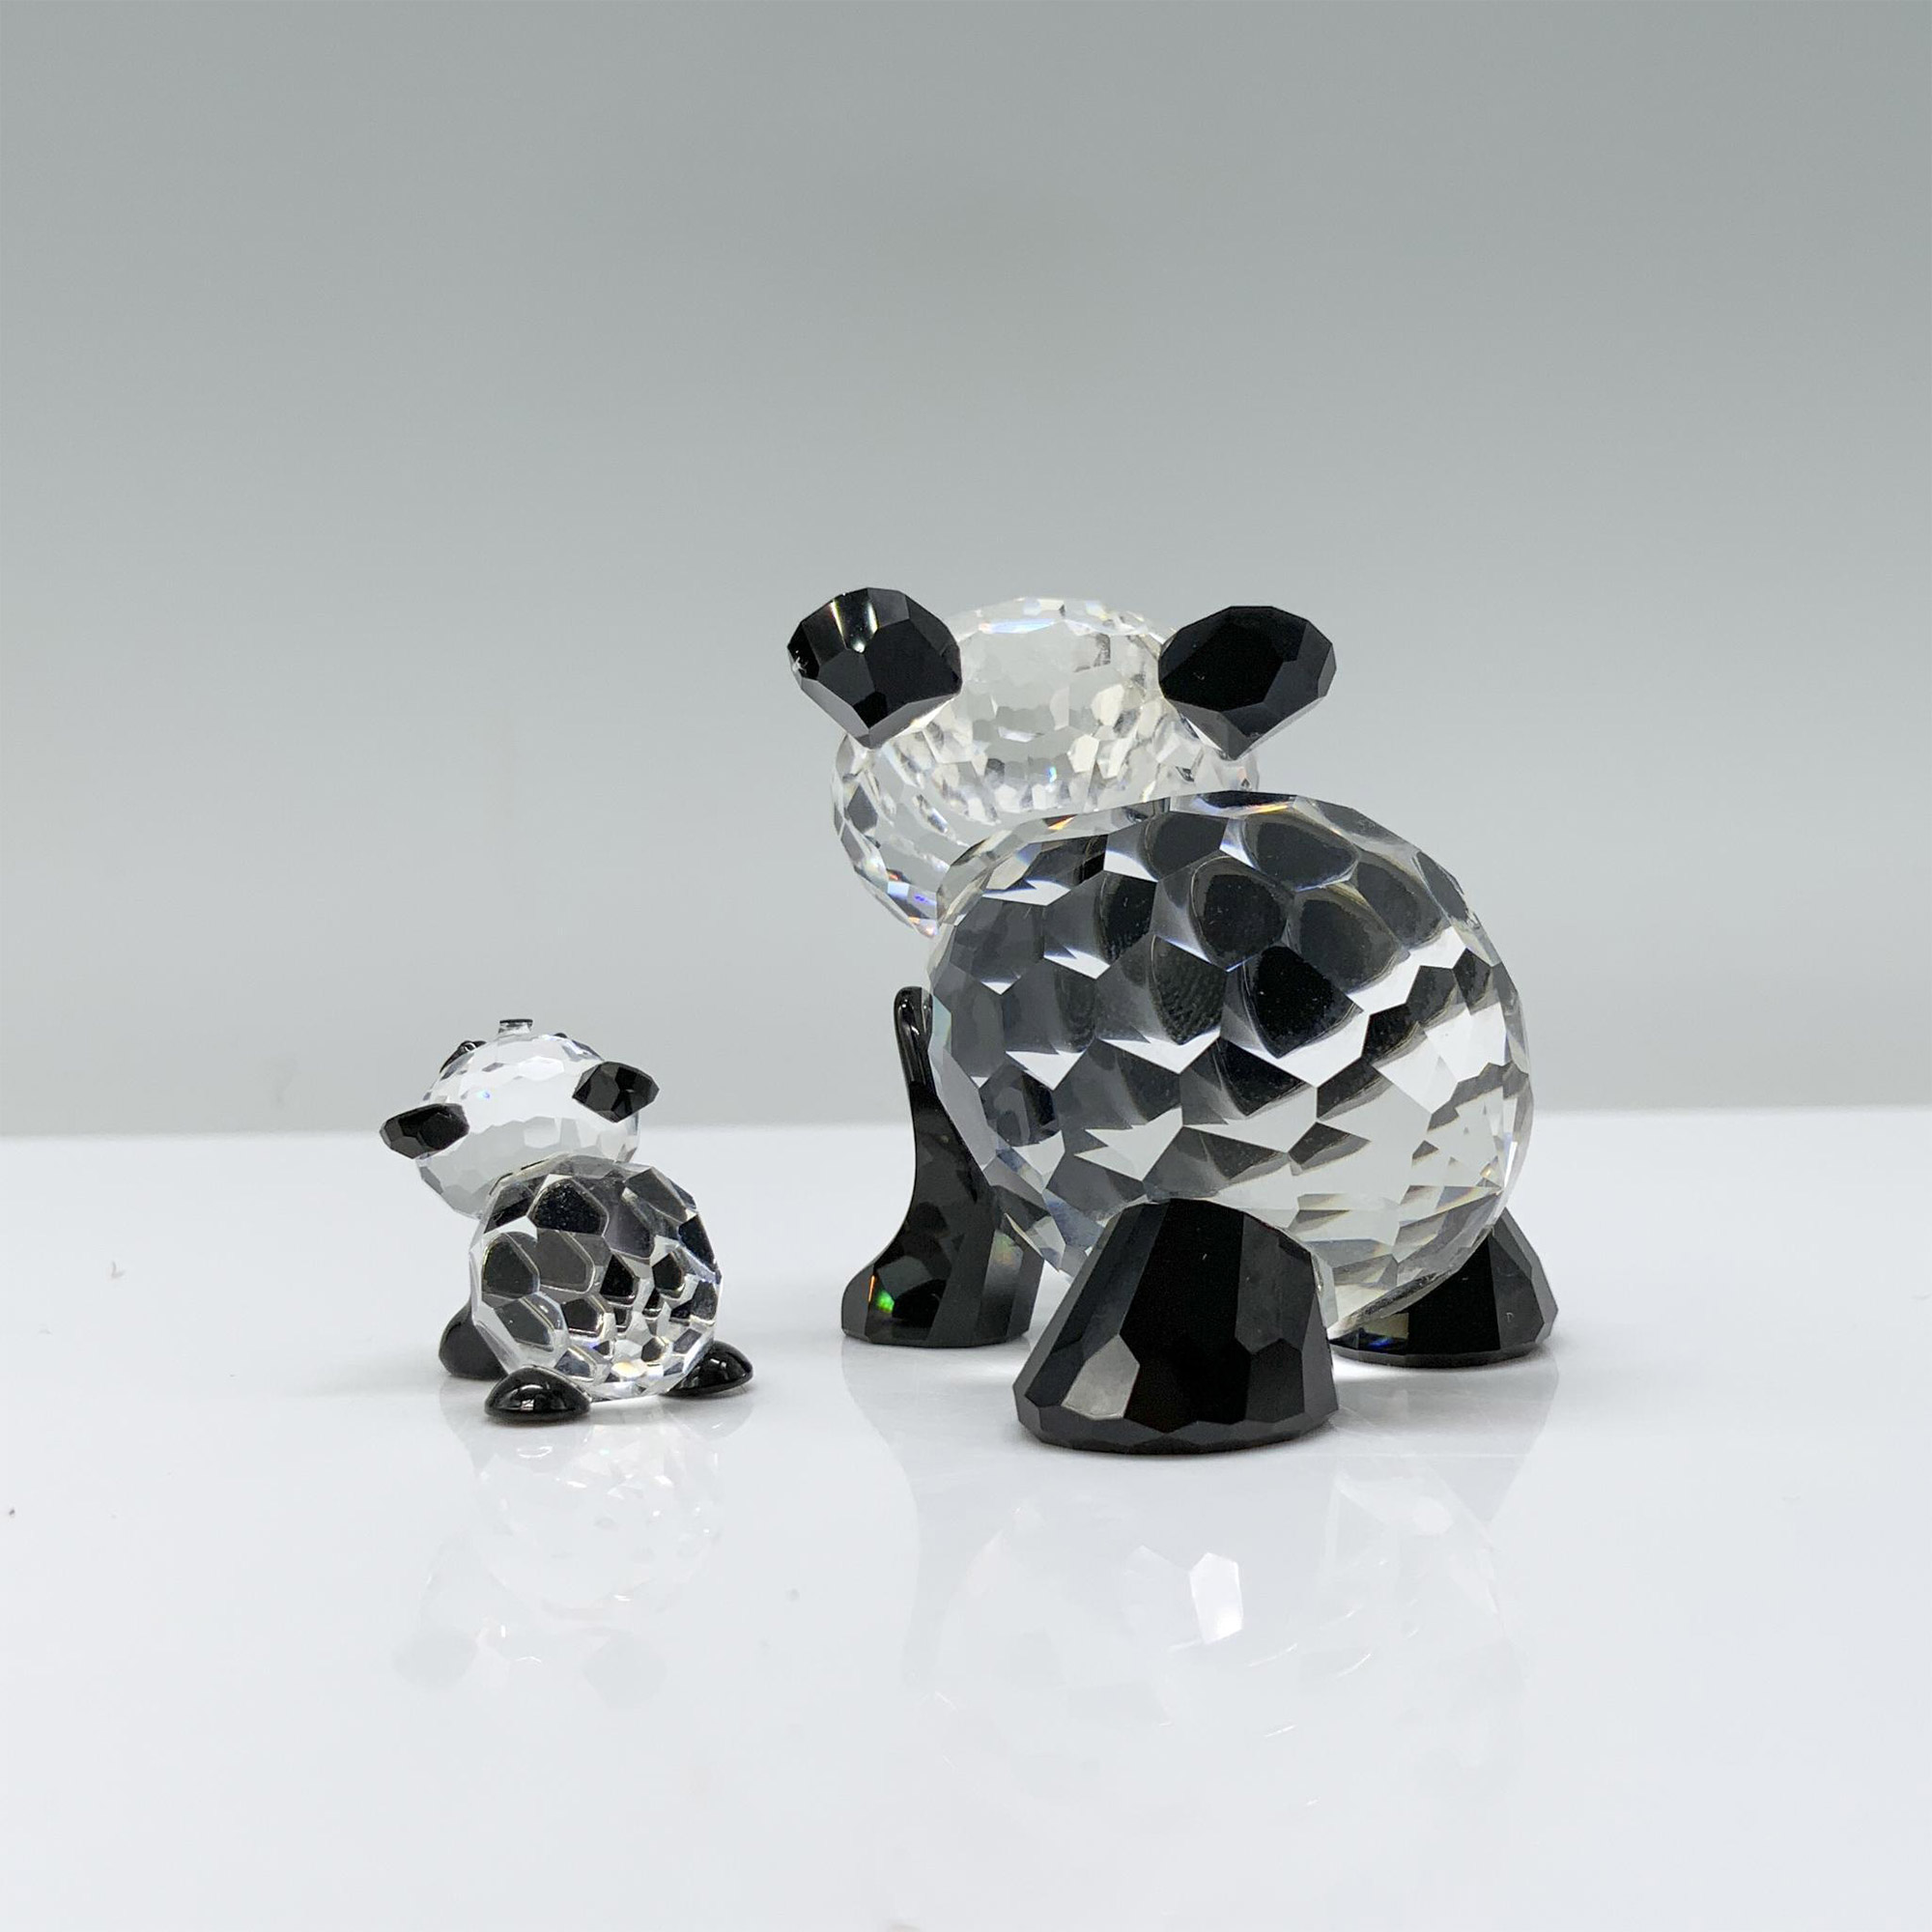 2pc Swarovski Crystal Figurines, Pandas 181080 and 181081 - Image 2 of 4